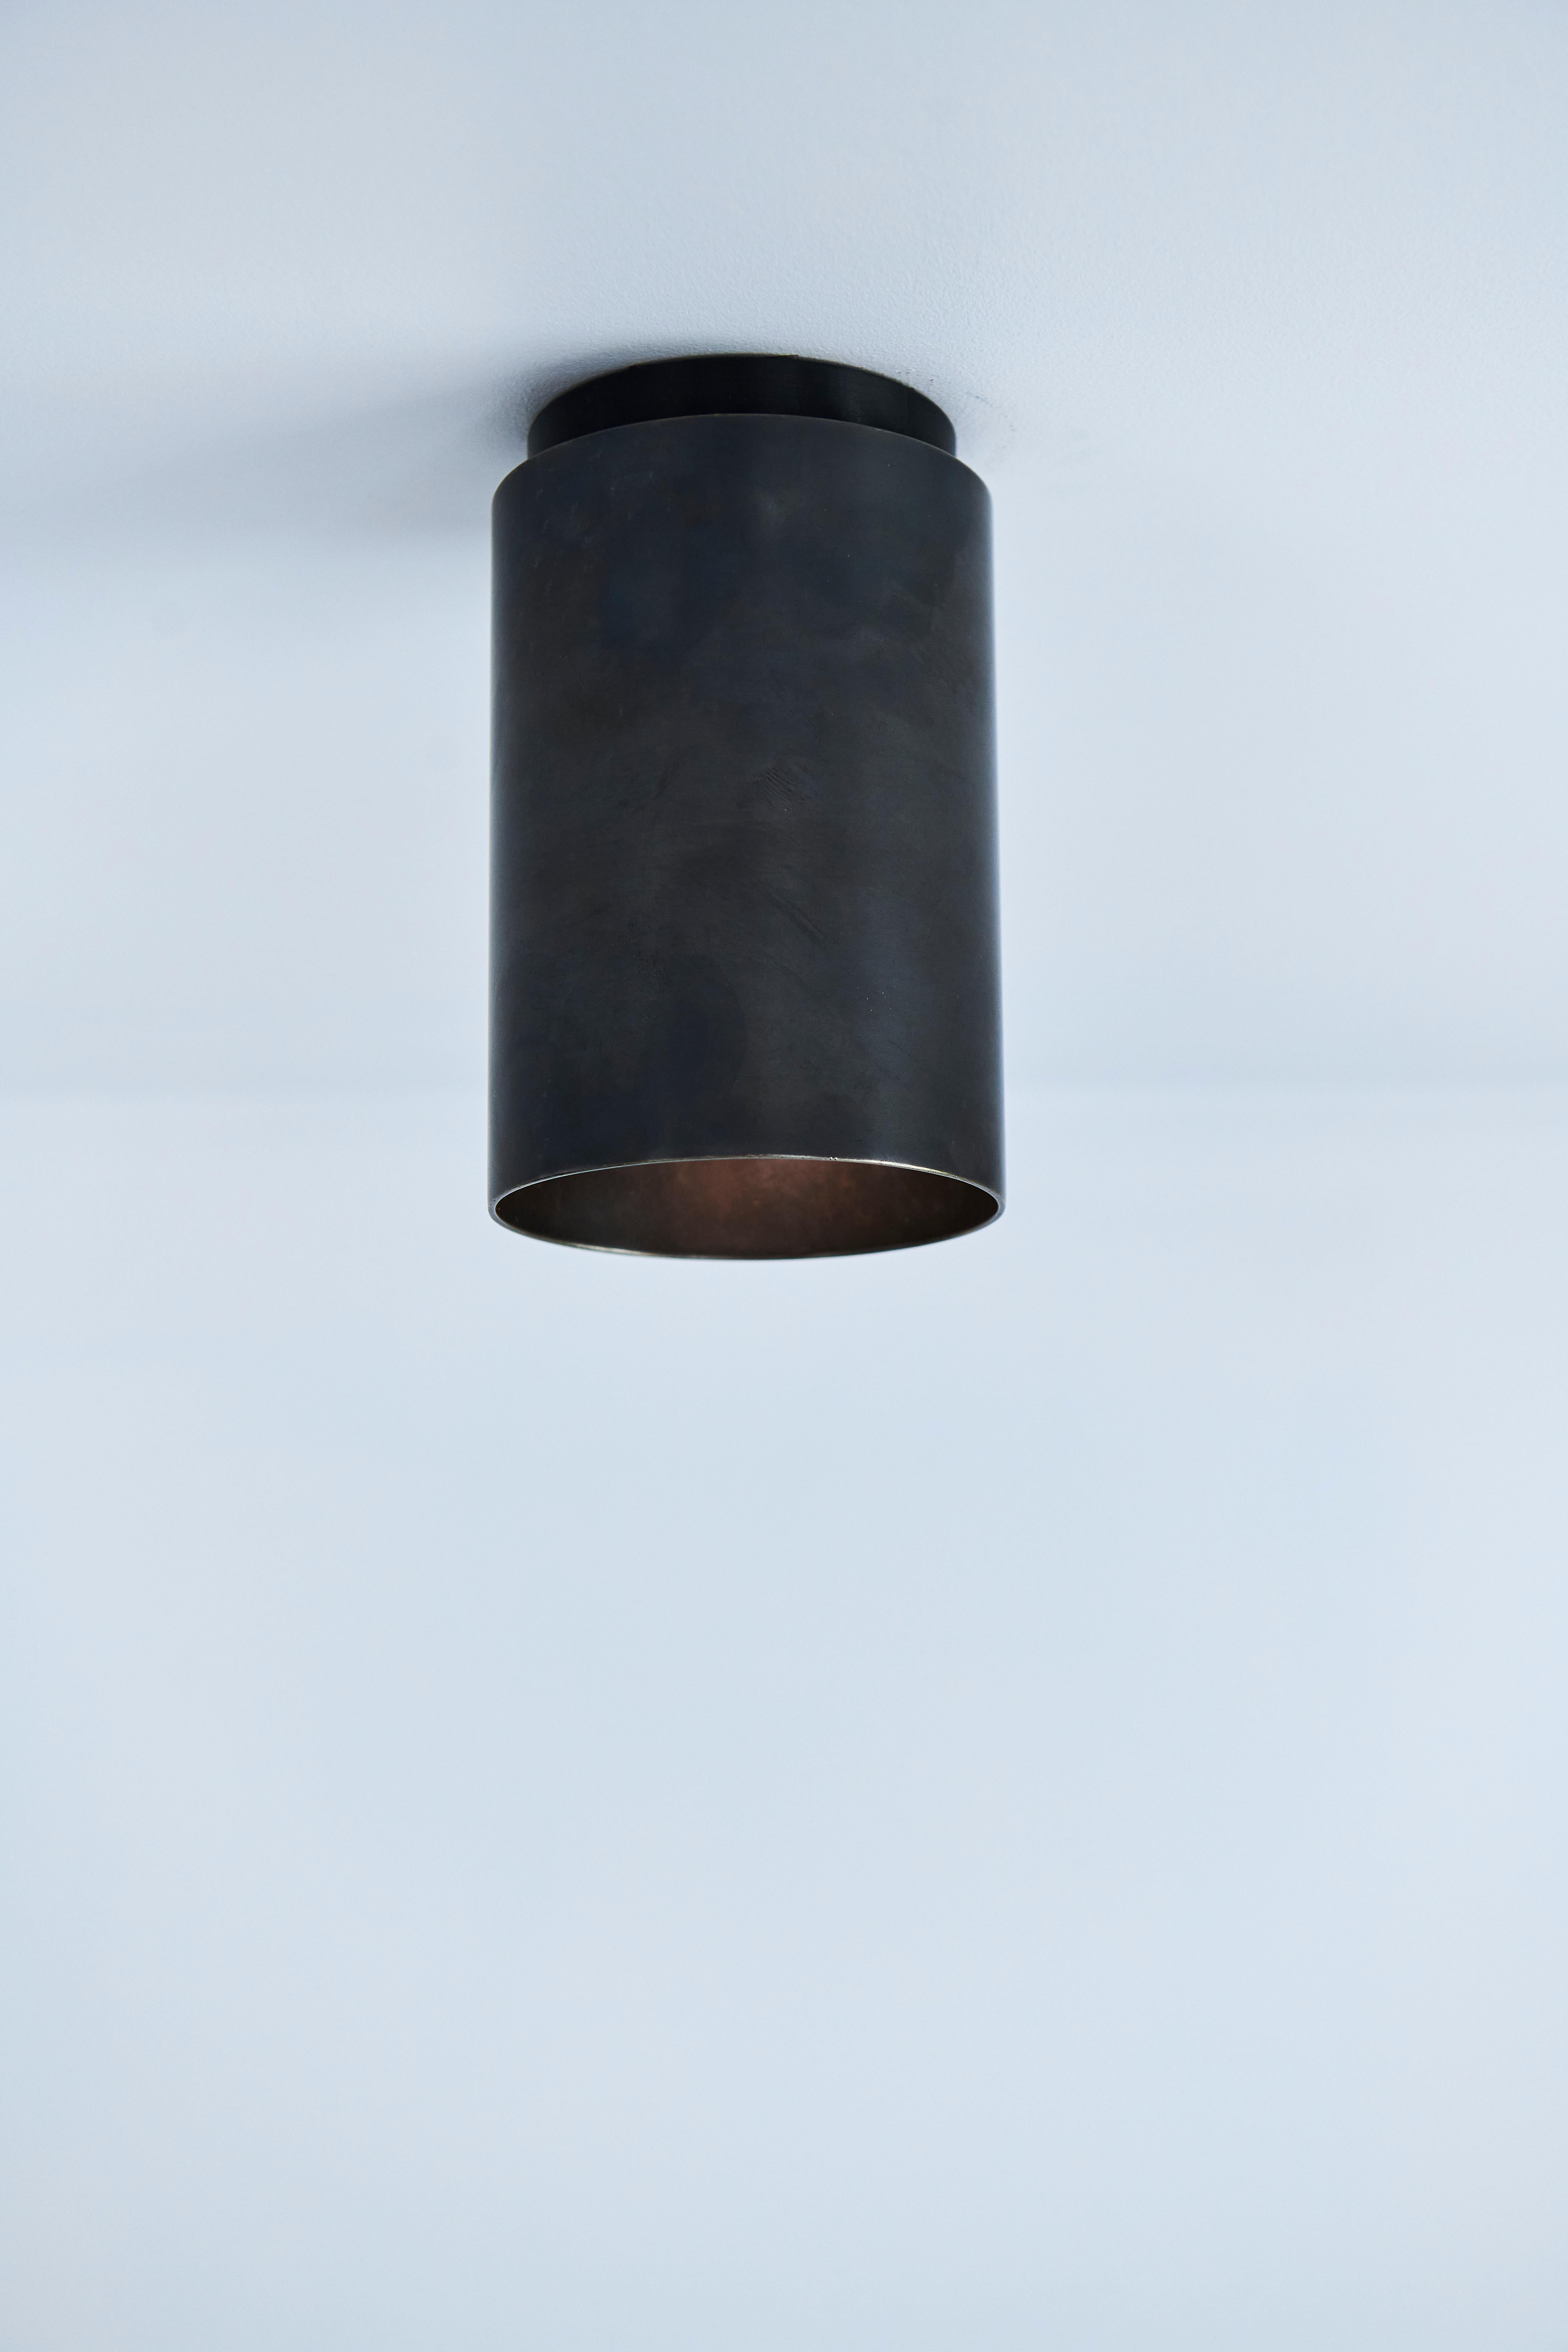 Australian Mott St Spot Light, Noir Blackened Brass, by DUNLIN For Sale